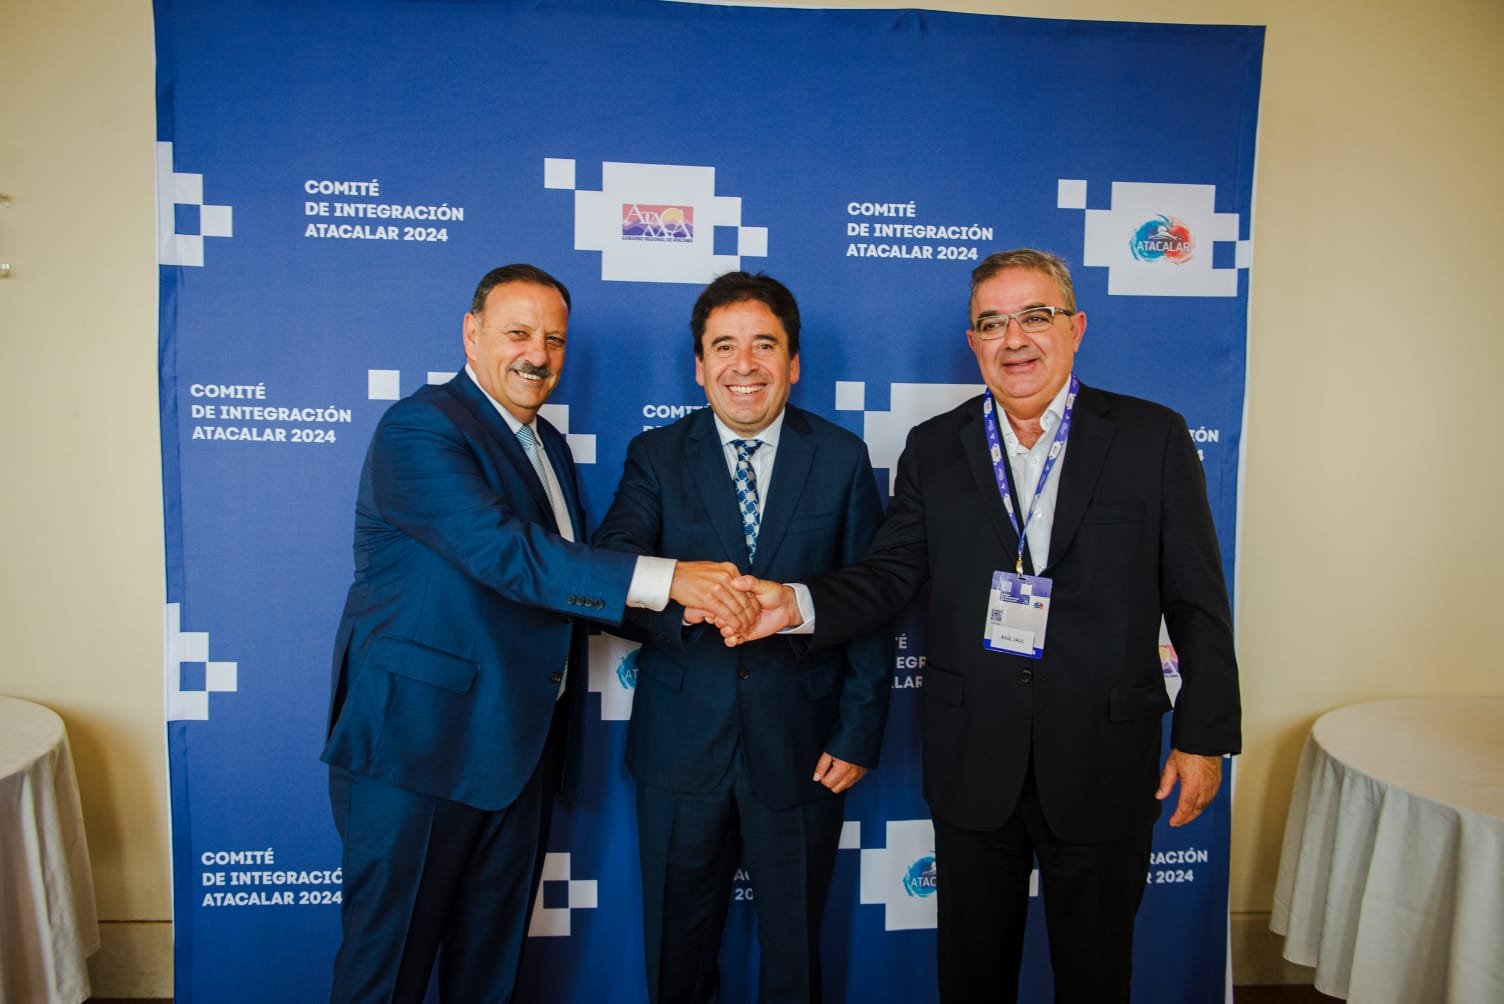 Integración Regional Chile – Argentina: trabajan para avanzar con el Corredor Bioceánico y relaciones bilaterales